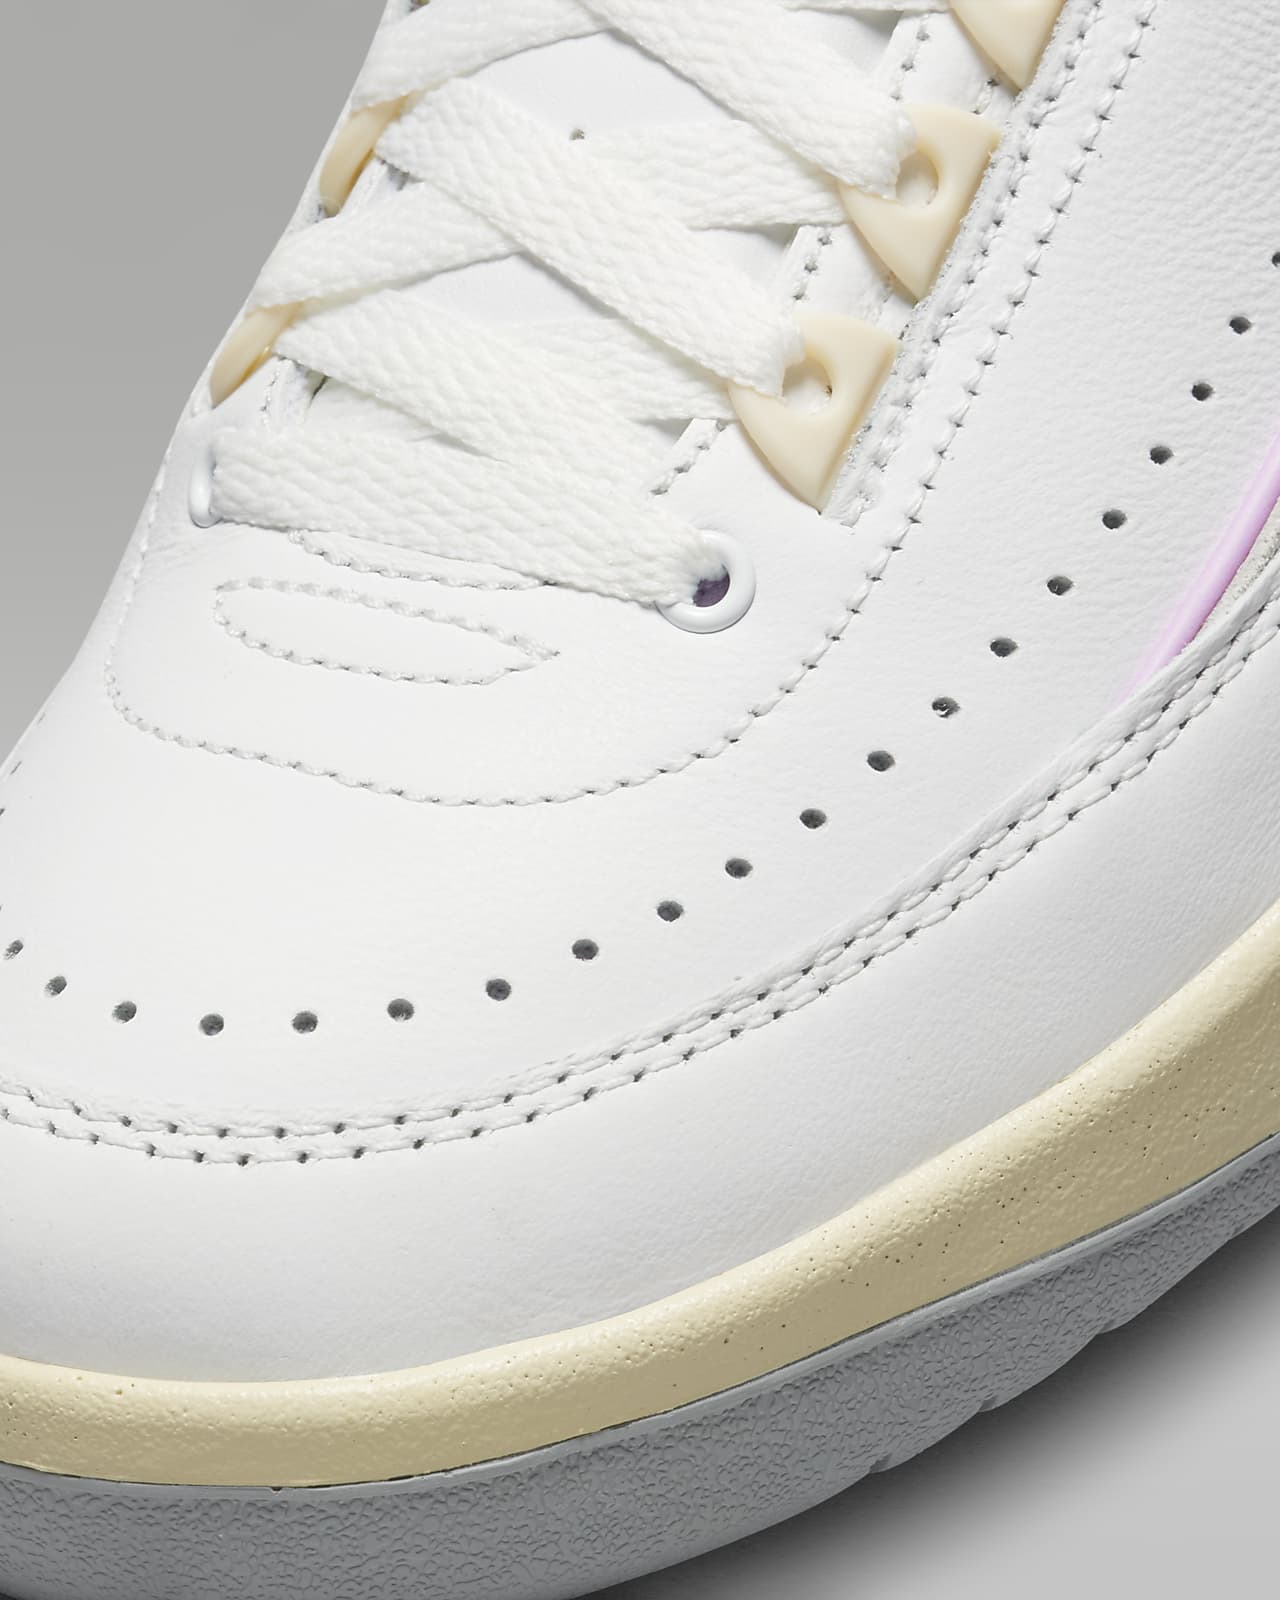 9 Nike Air Jordans Every Sneakerhead Needs